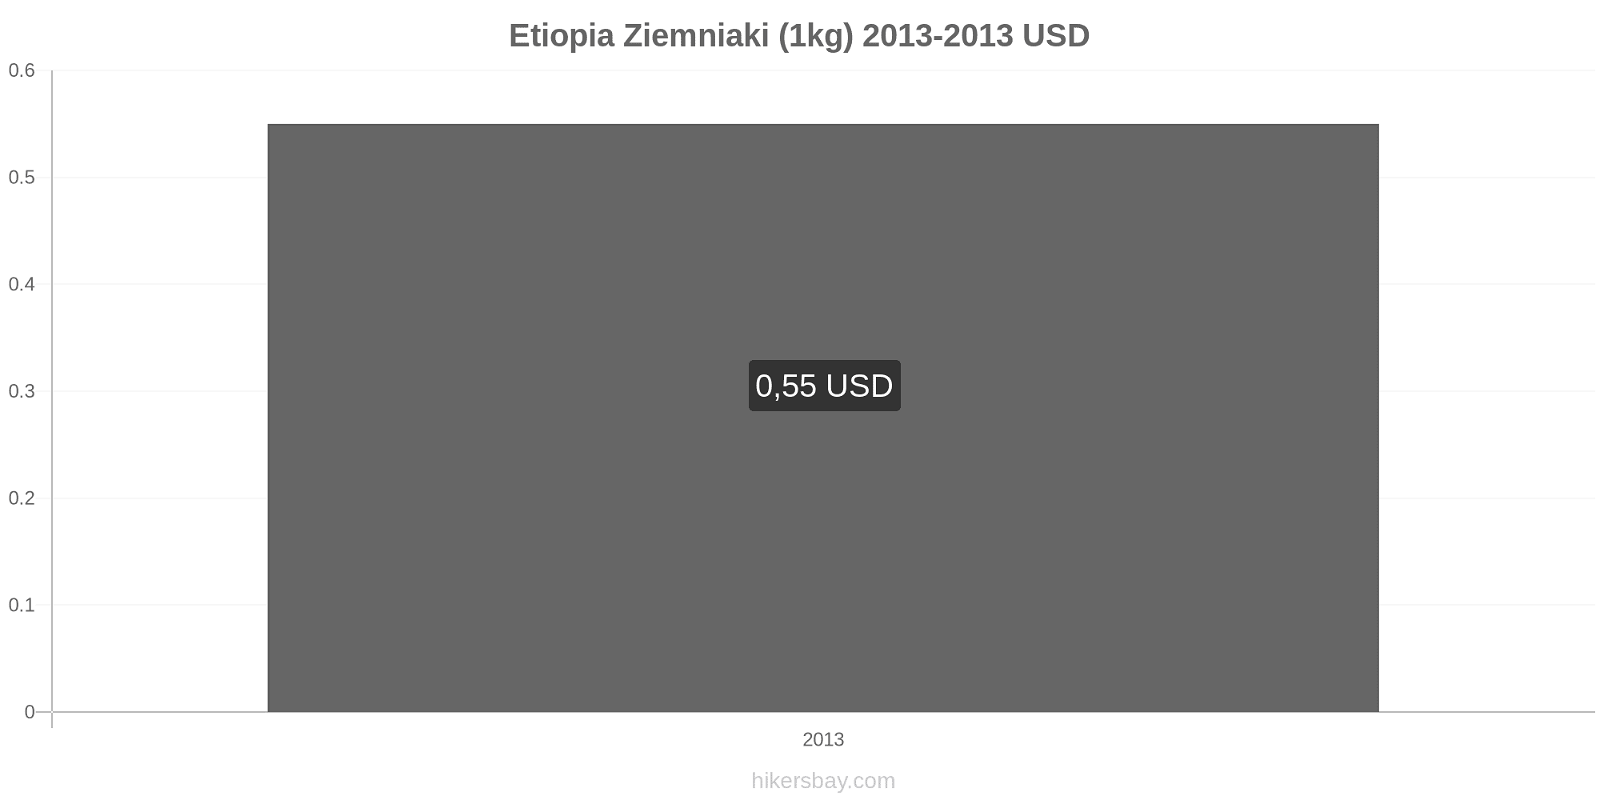 Etiopia zmiany cen Ziemniaki (1kg) hikersbay.com